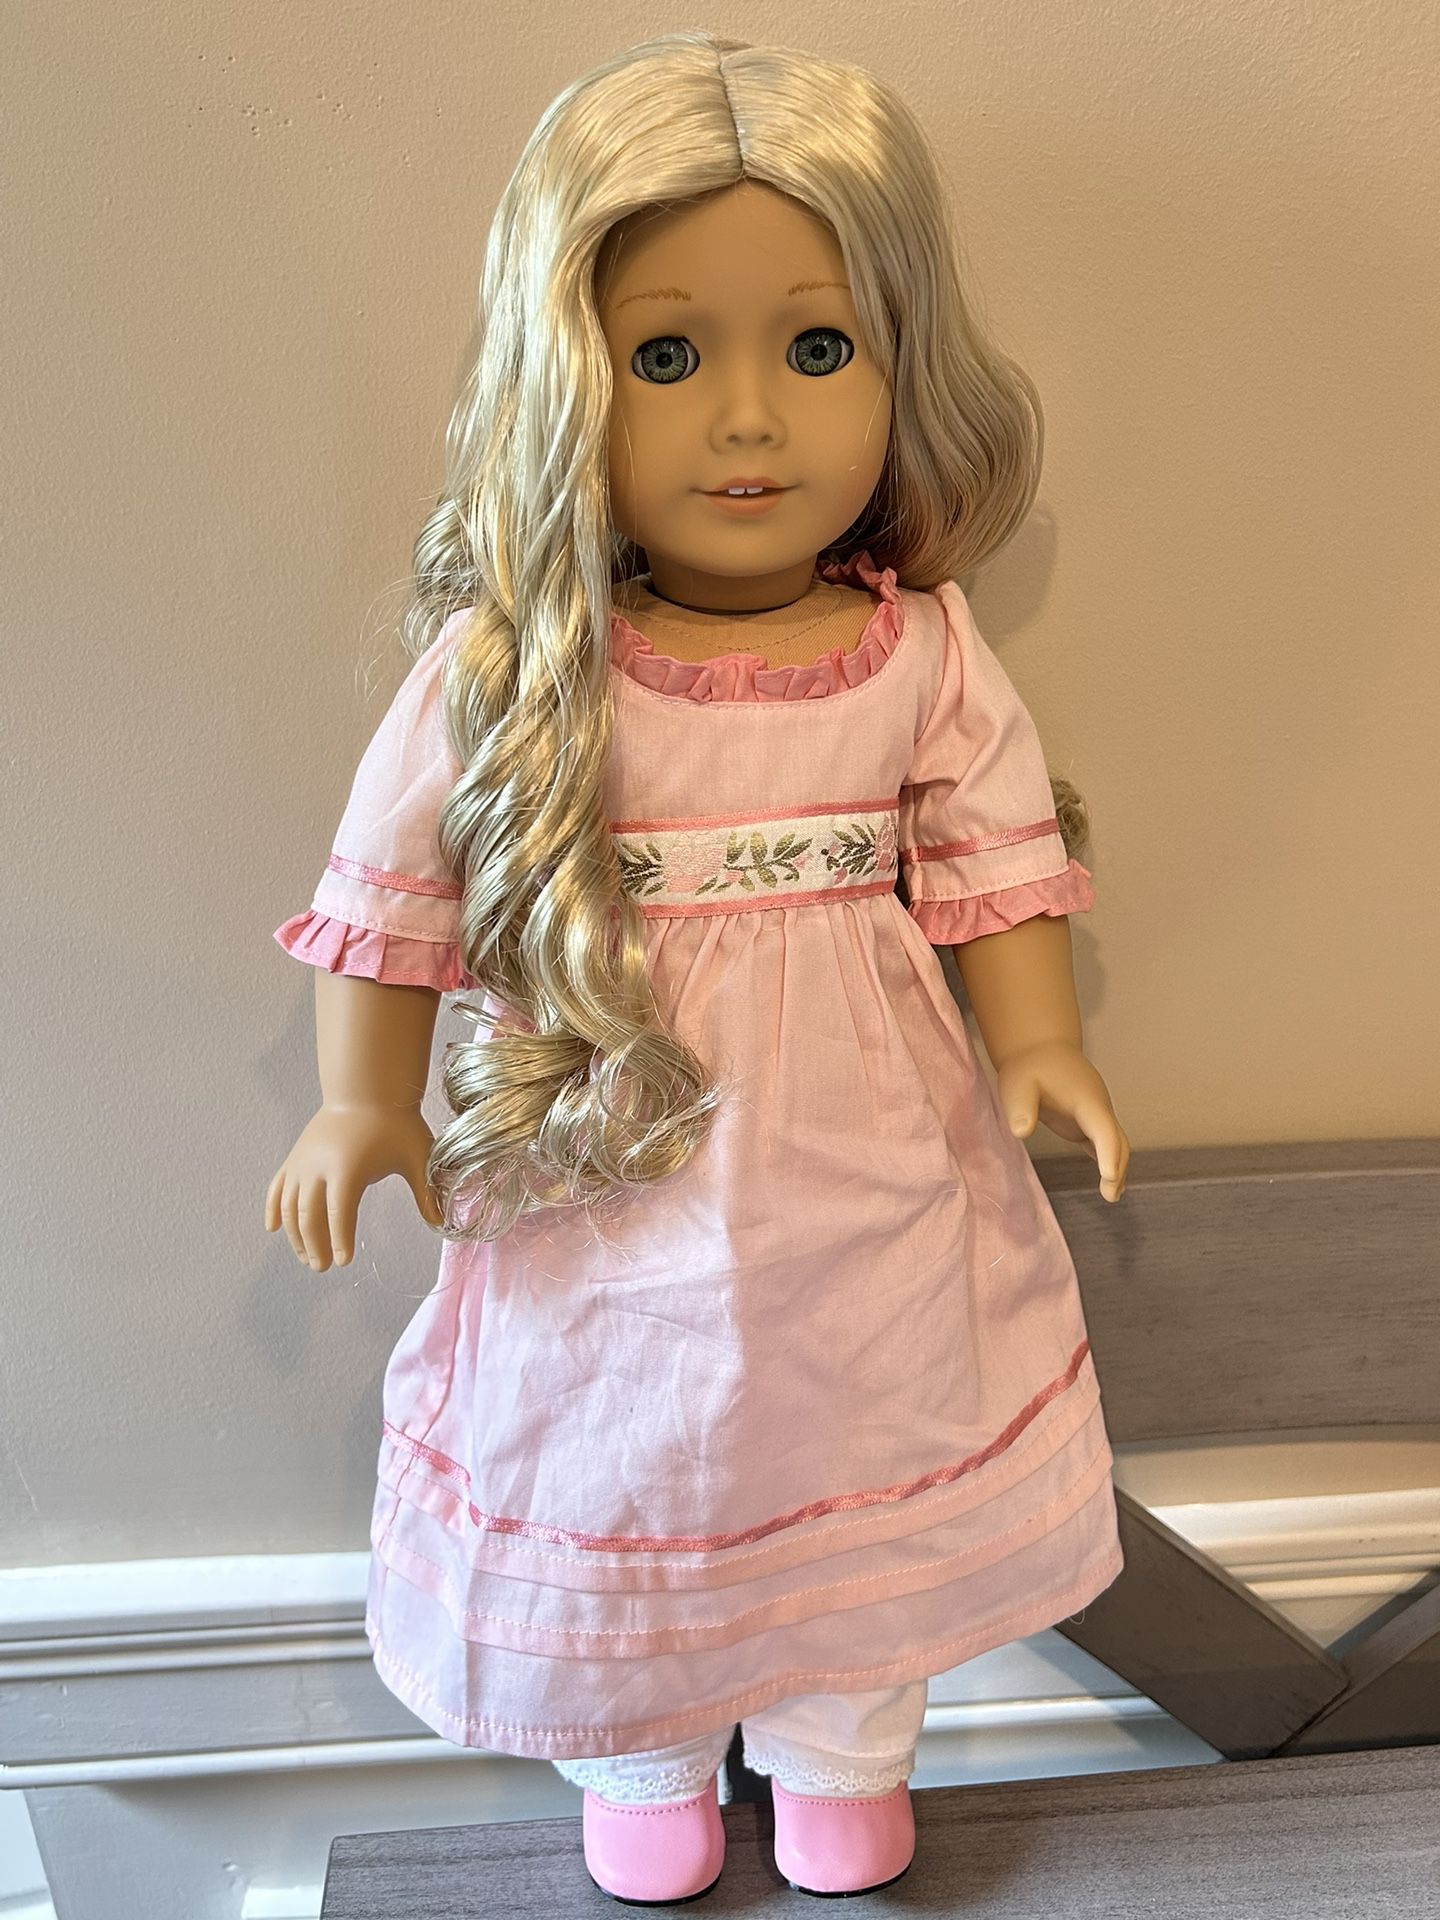 Caroline Abbot Historical American Girl Doll